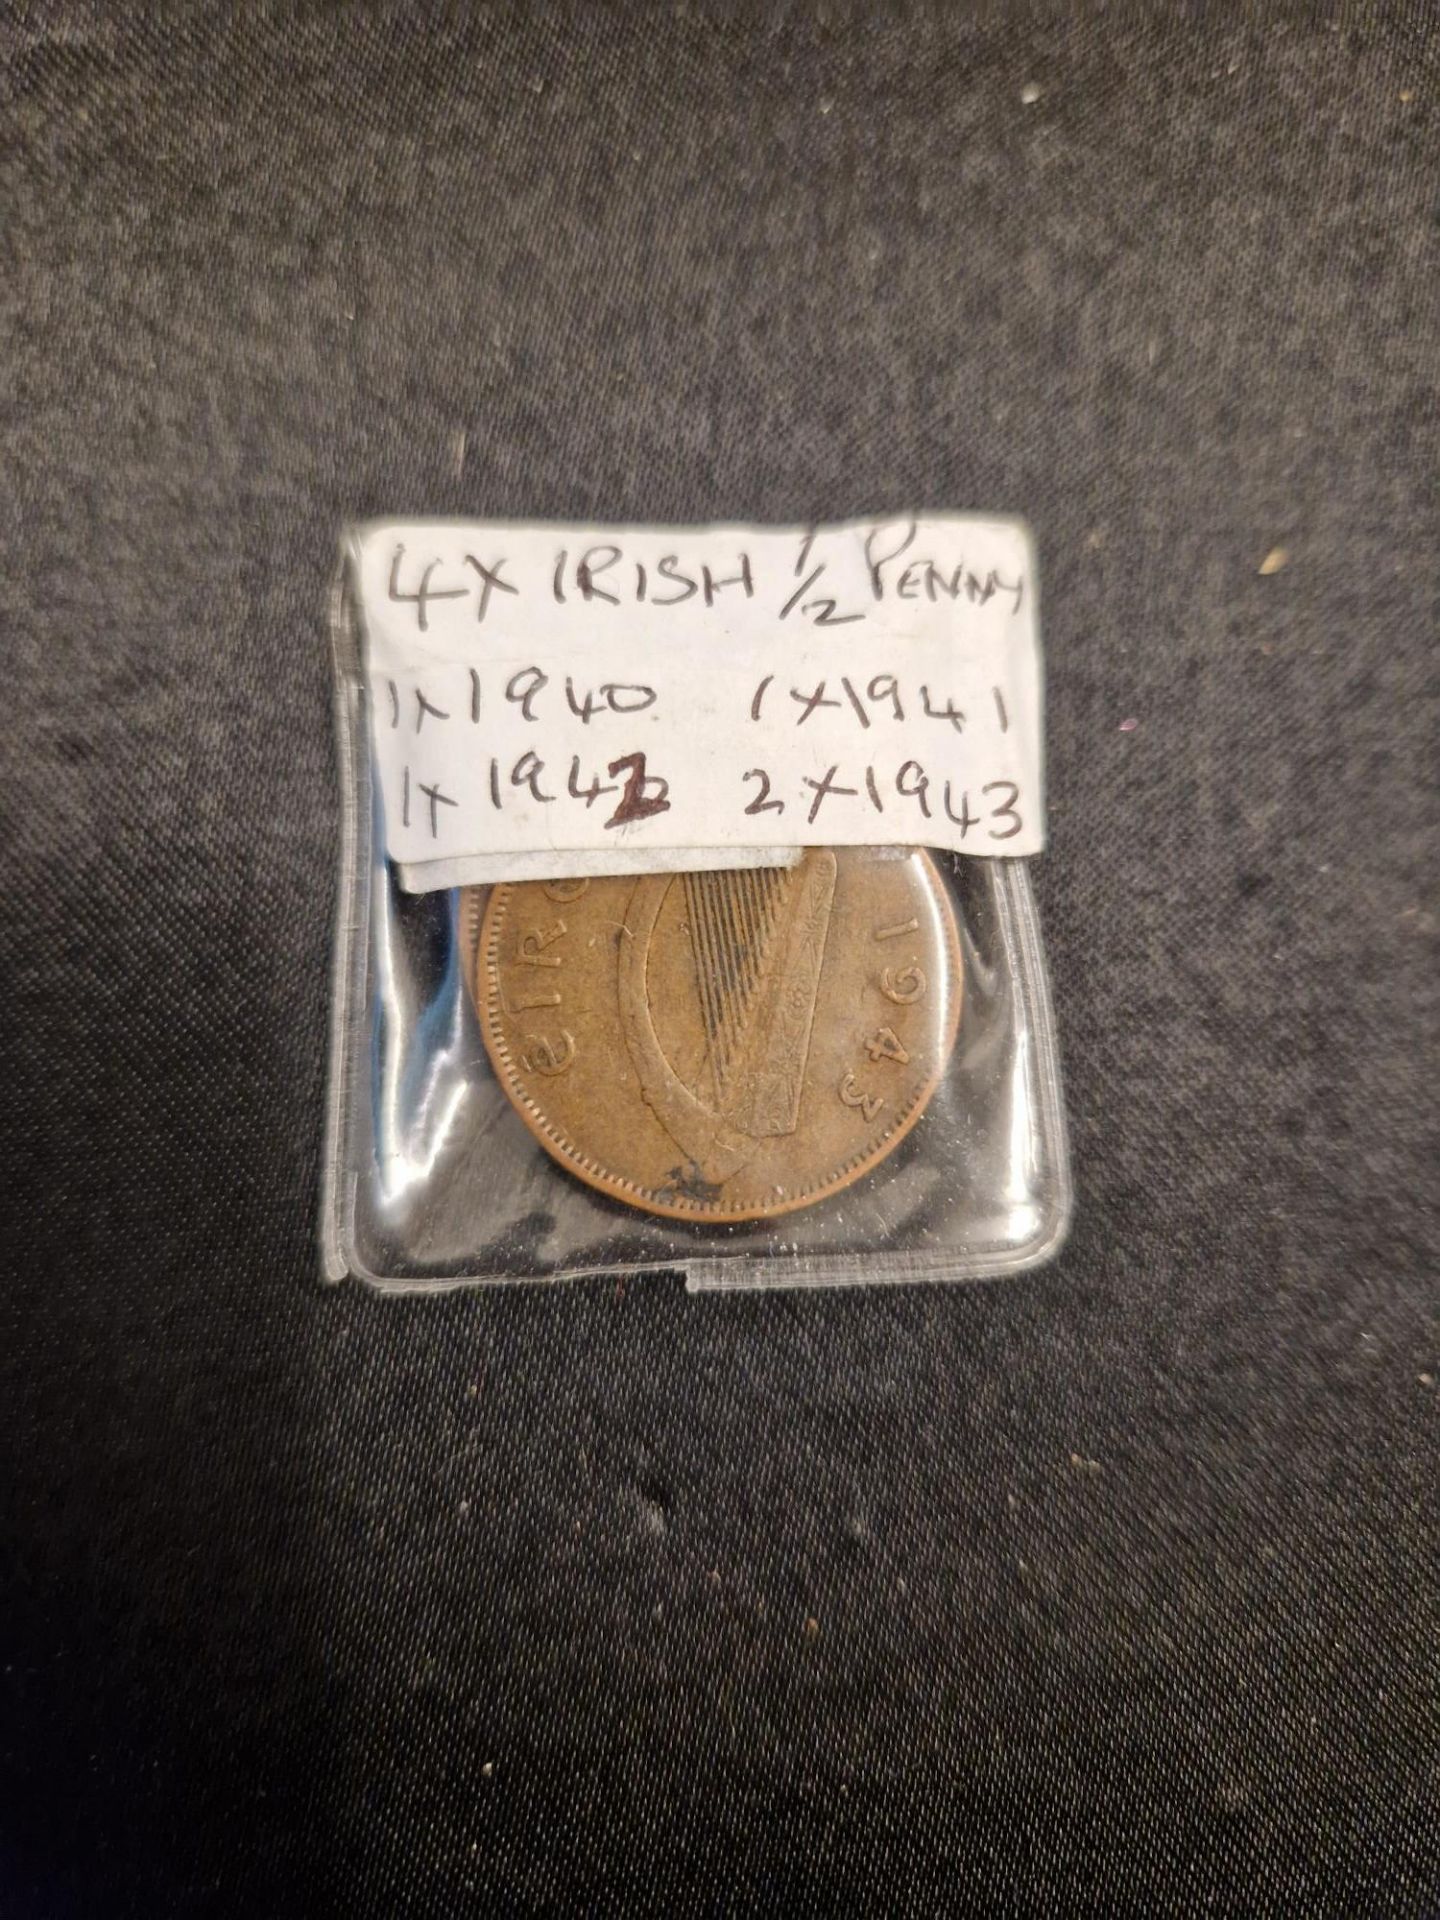 4 x irish 1/2 pennys, 1940, 1941, 1942, 2 x 1943